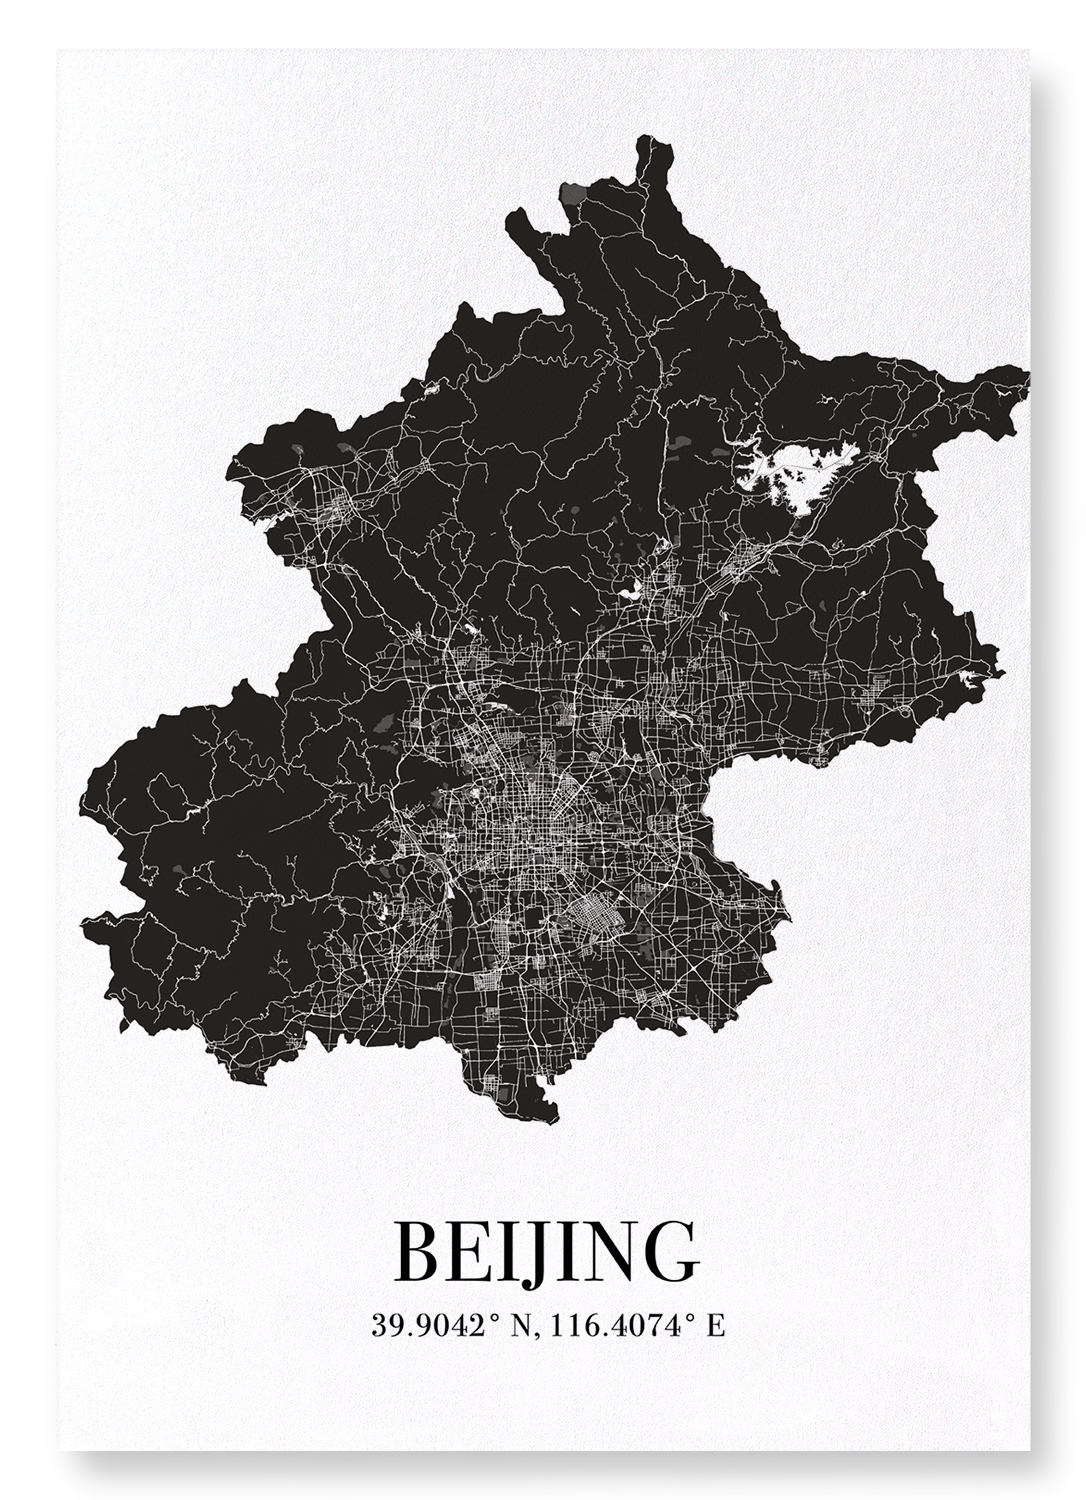 BEIJING CUTOUT: Map Cutout Art Print